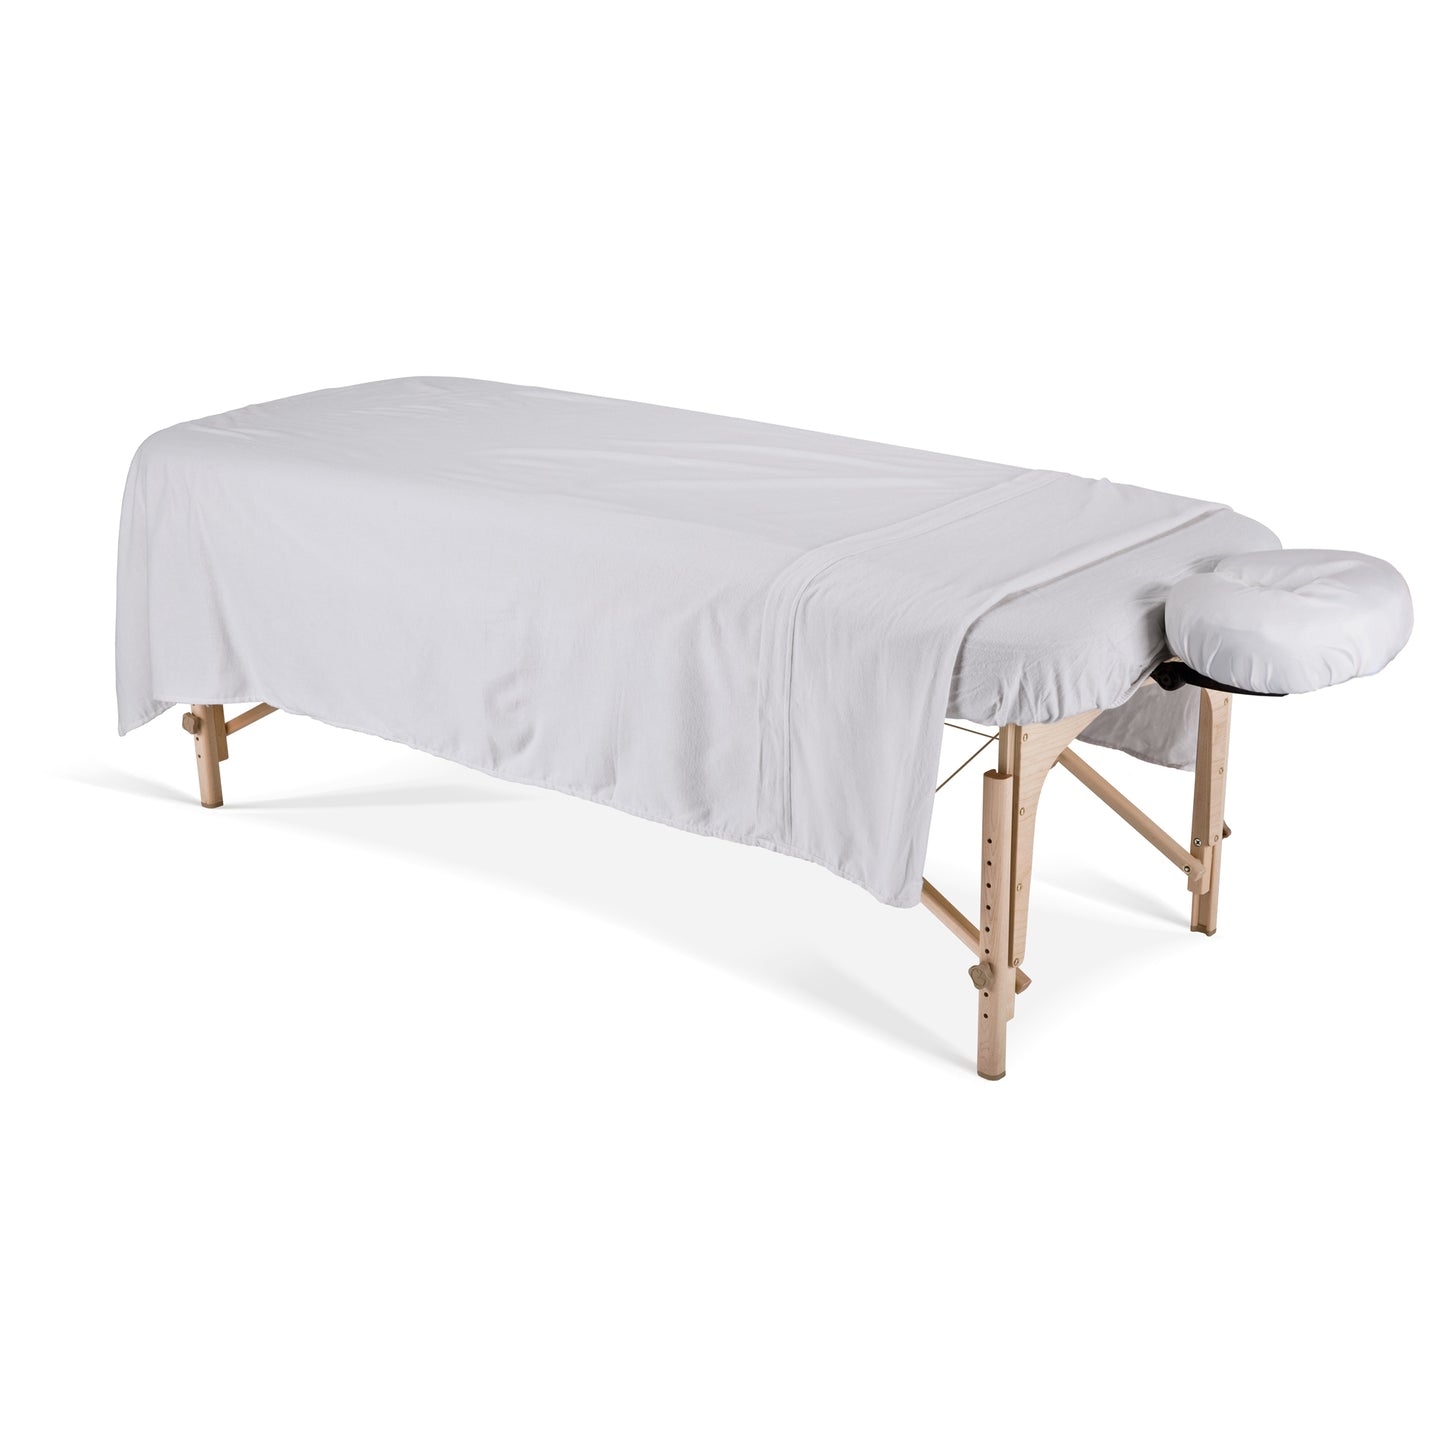 Earthlite - Basics Flannel Sheet Set - Superb Massage Tables